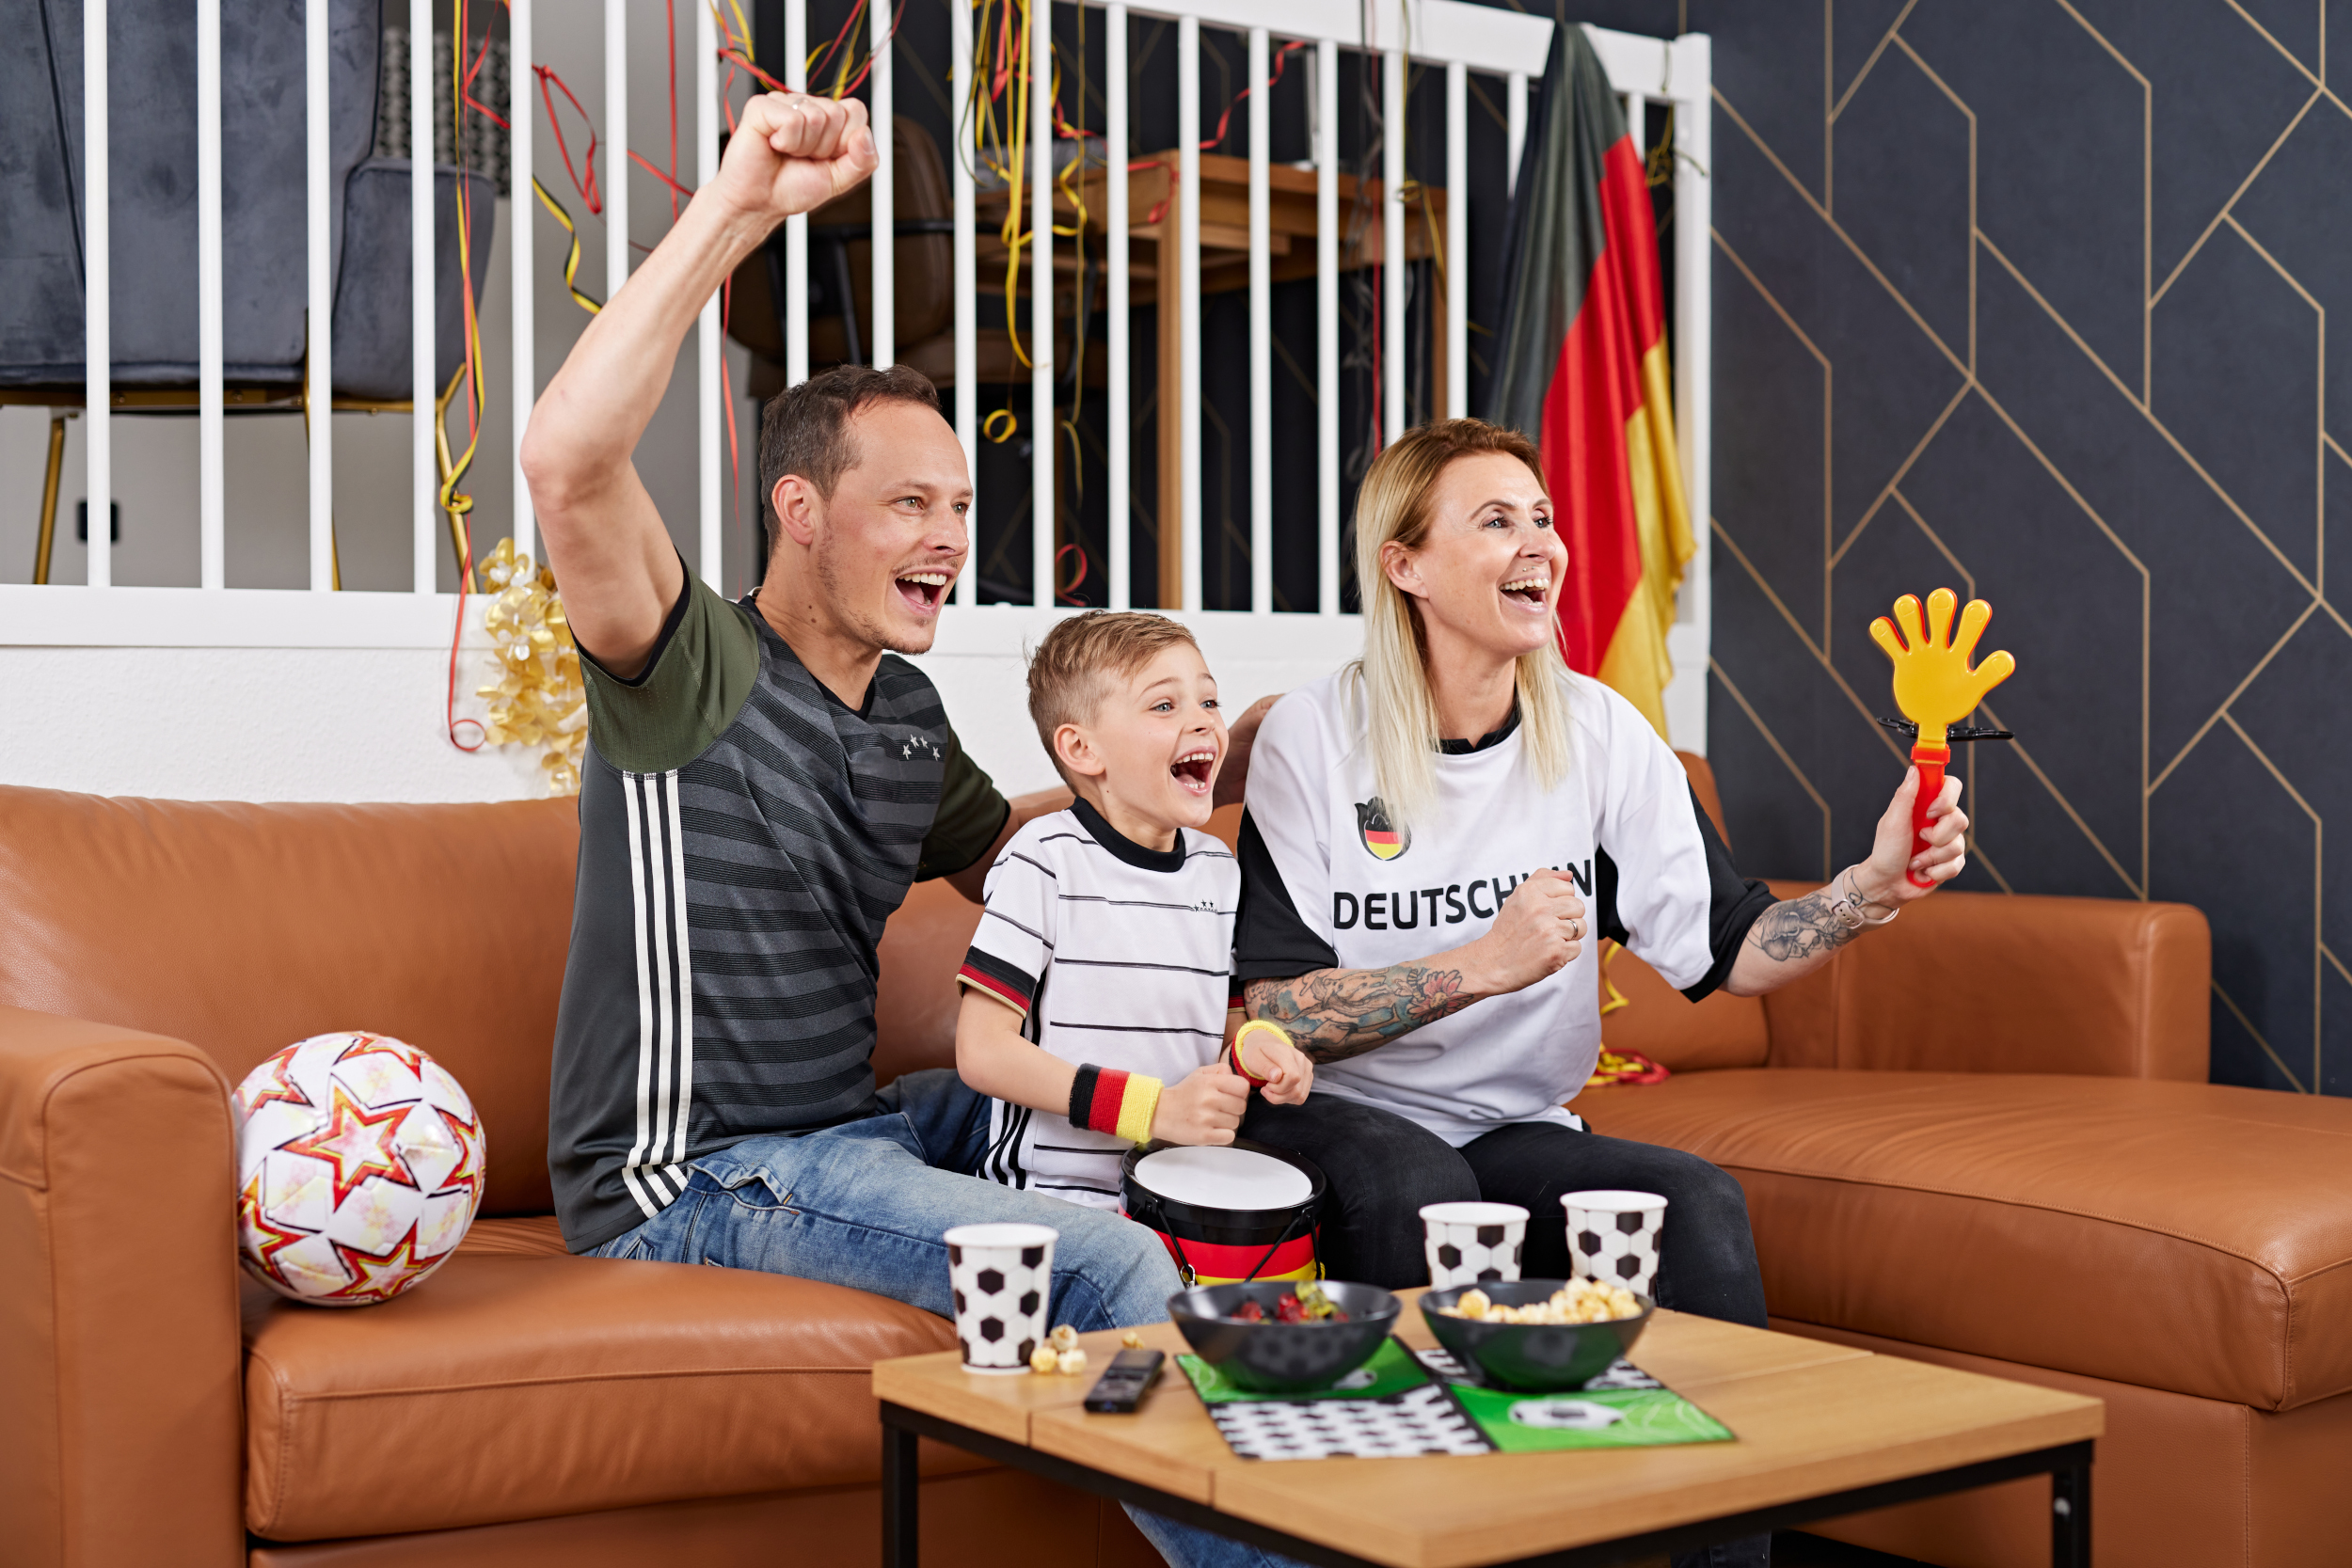 Papa, Mama und Kind sitzen auf dem Sofa und jubeln Deutschland zu